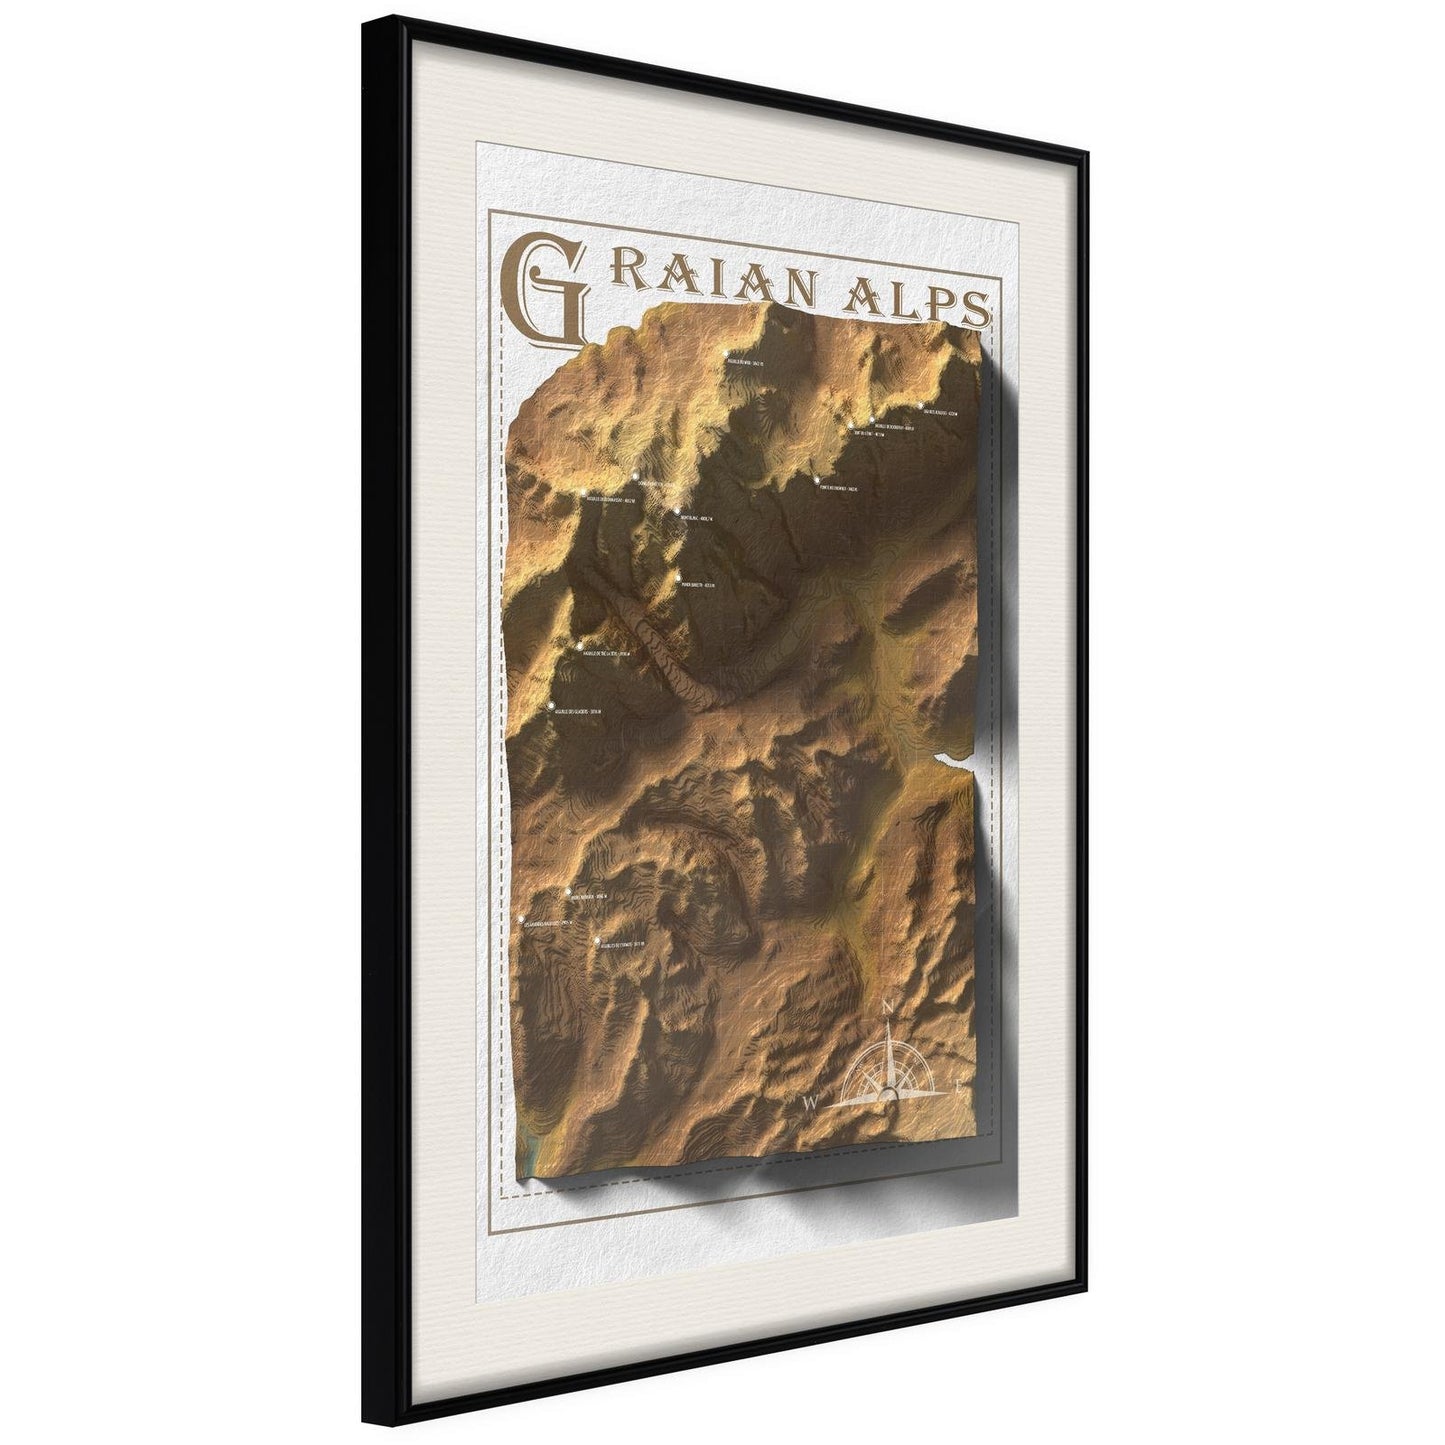 Reliefkarte: Grajische Alpen